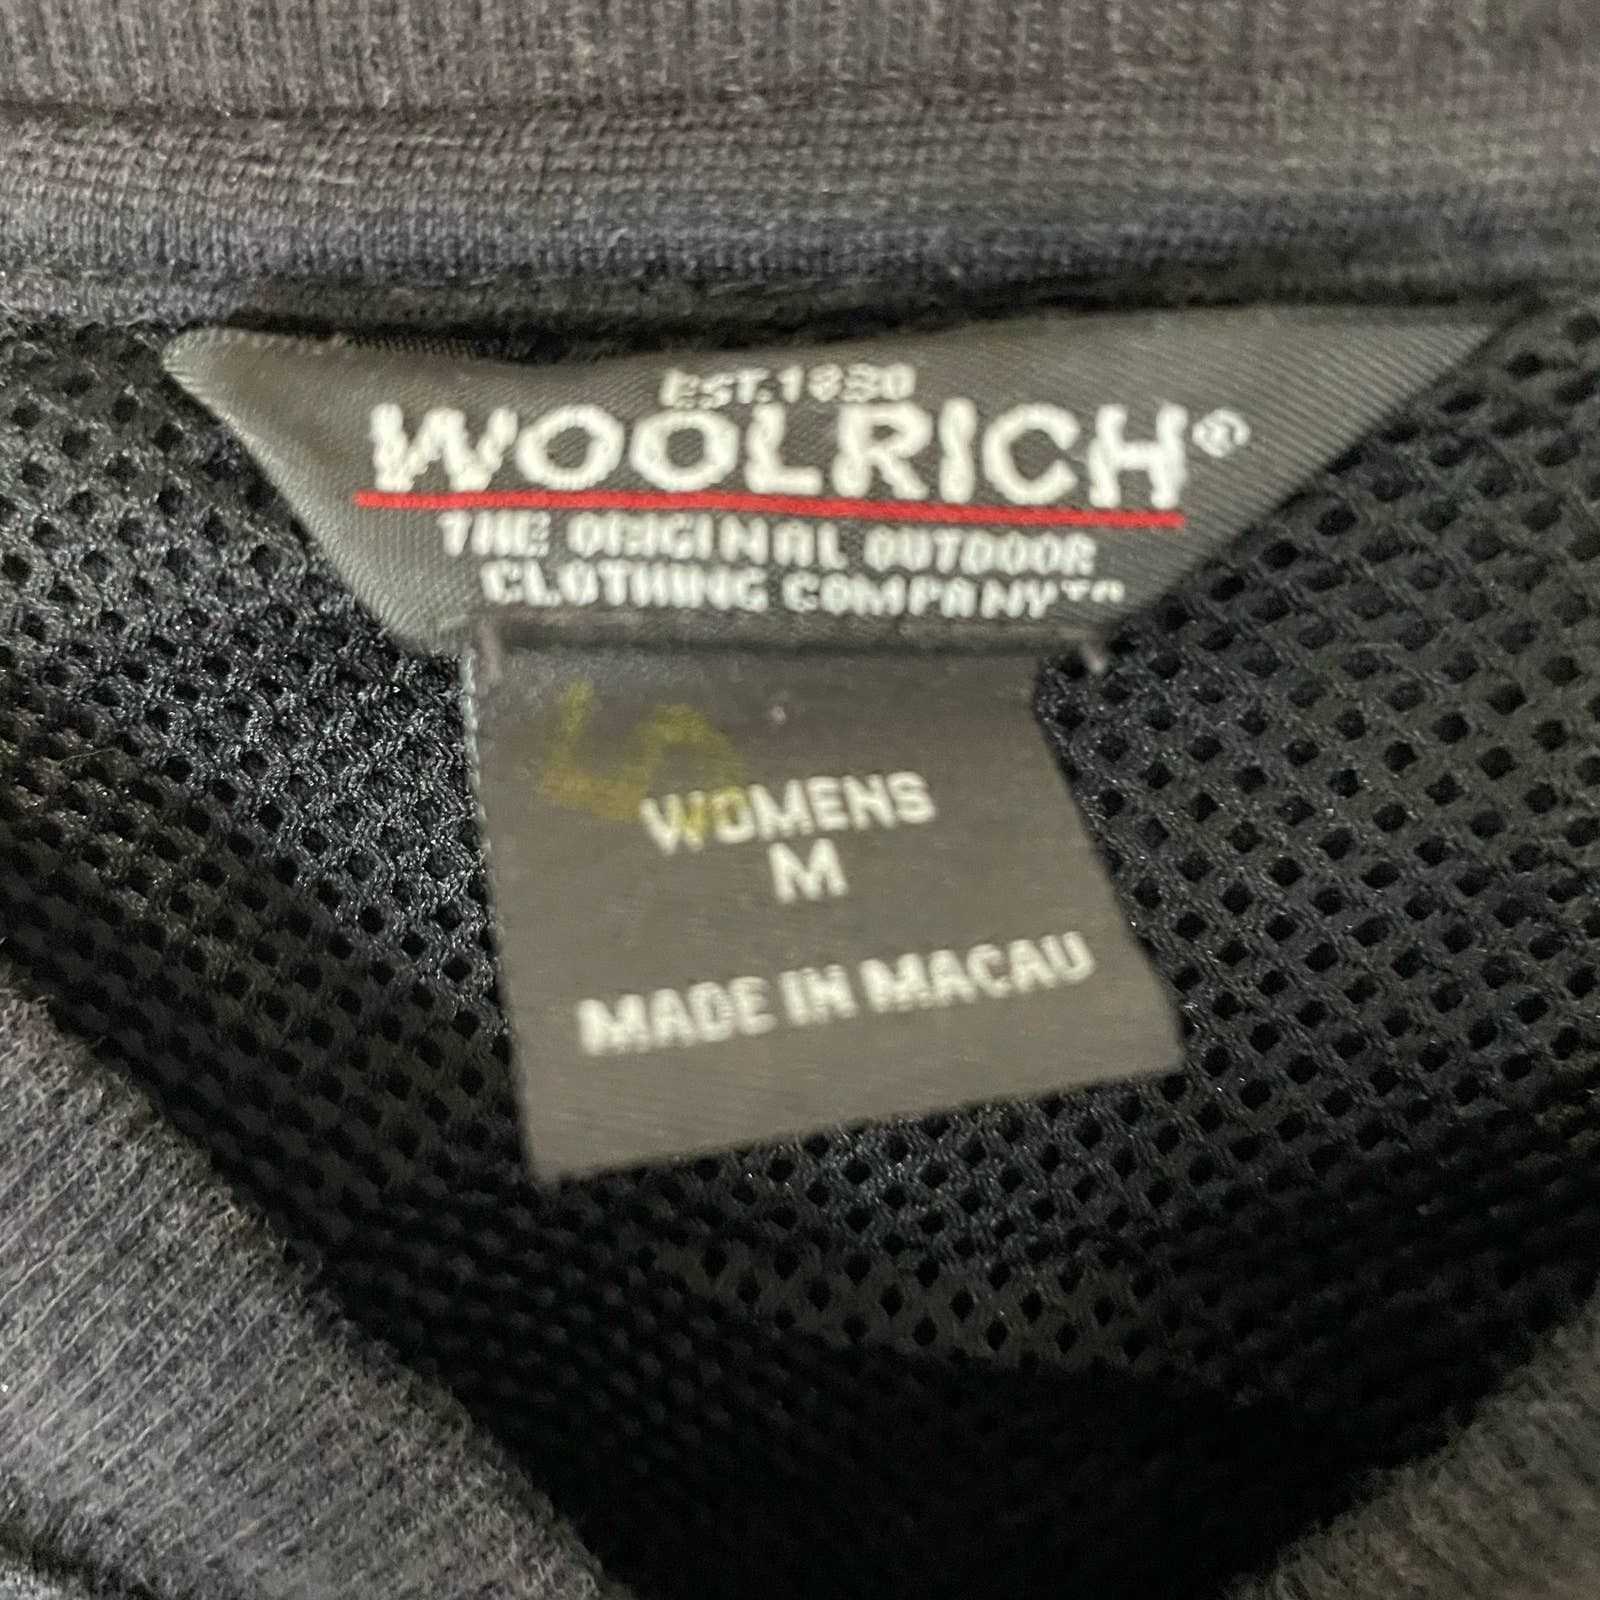 Woolrich Woolen Mills Woolrich Black Sweatshirt M Full Zip Hooded Casual Womens Size M / US 6-8 / IT 42-44 - 4 Thumbnail